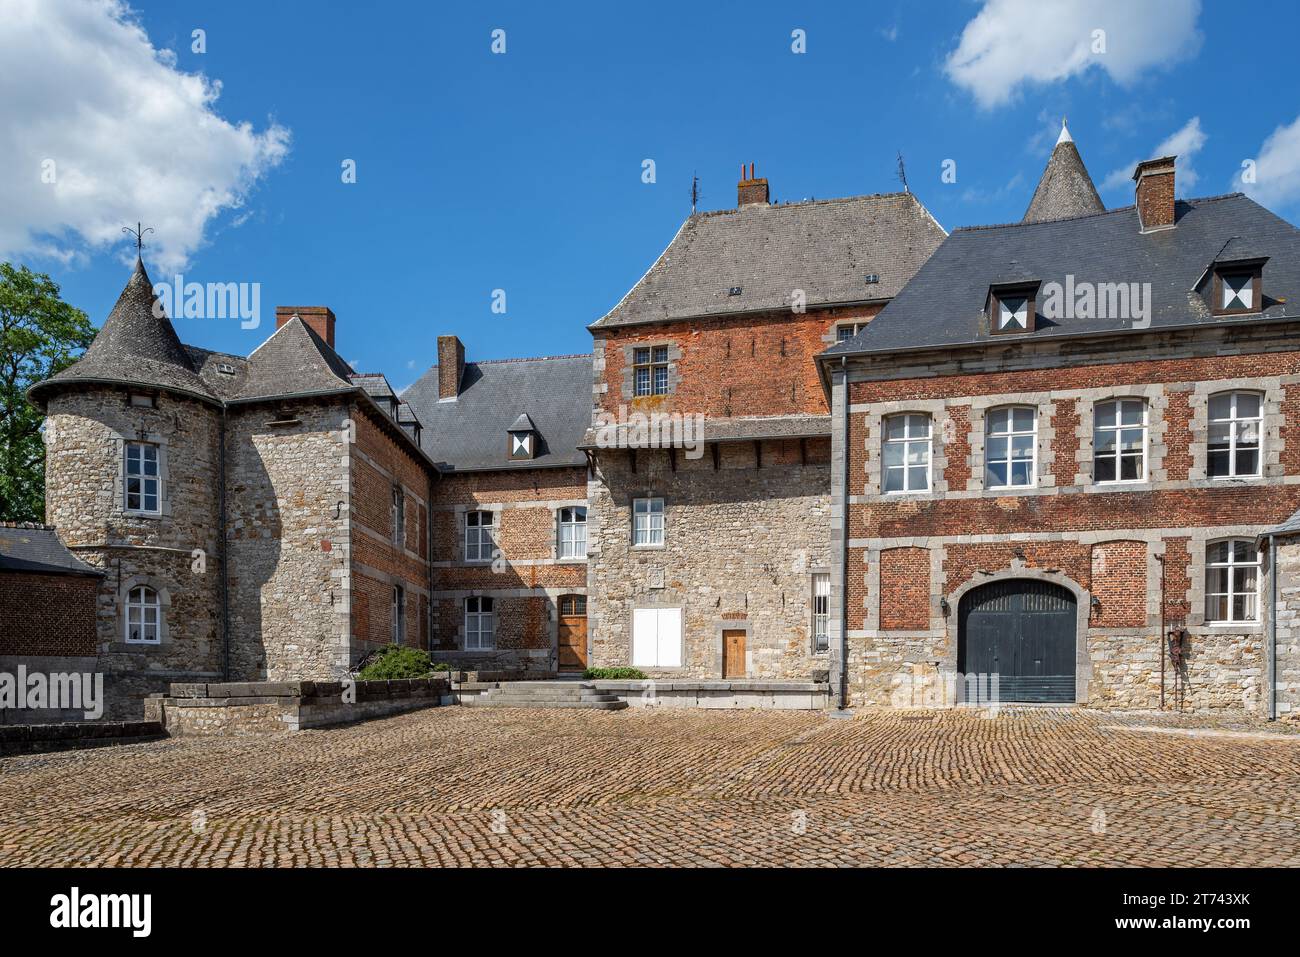 Château du Fosteau, château du 14e siècle à Leers-et-Fosteau près de Thuin, province du Hainaut, Ardennes belges, Wallonie, Belgique Banque D'Images